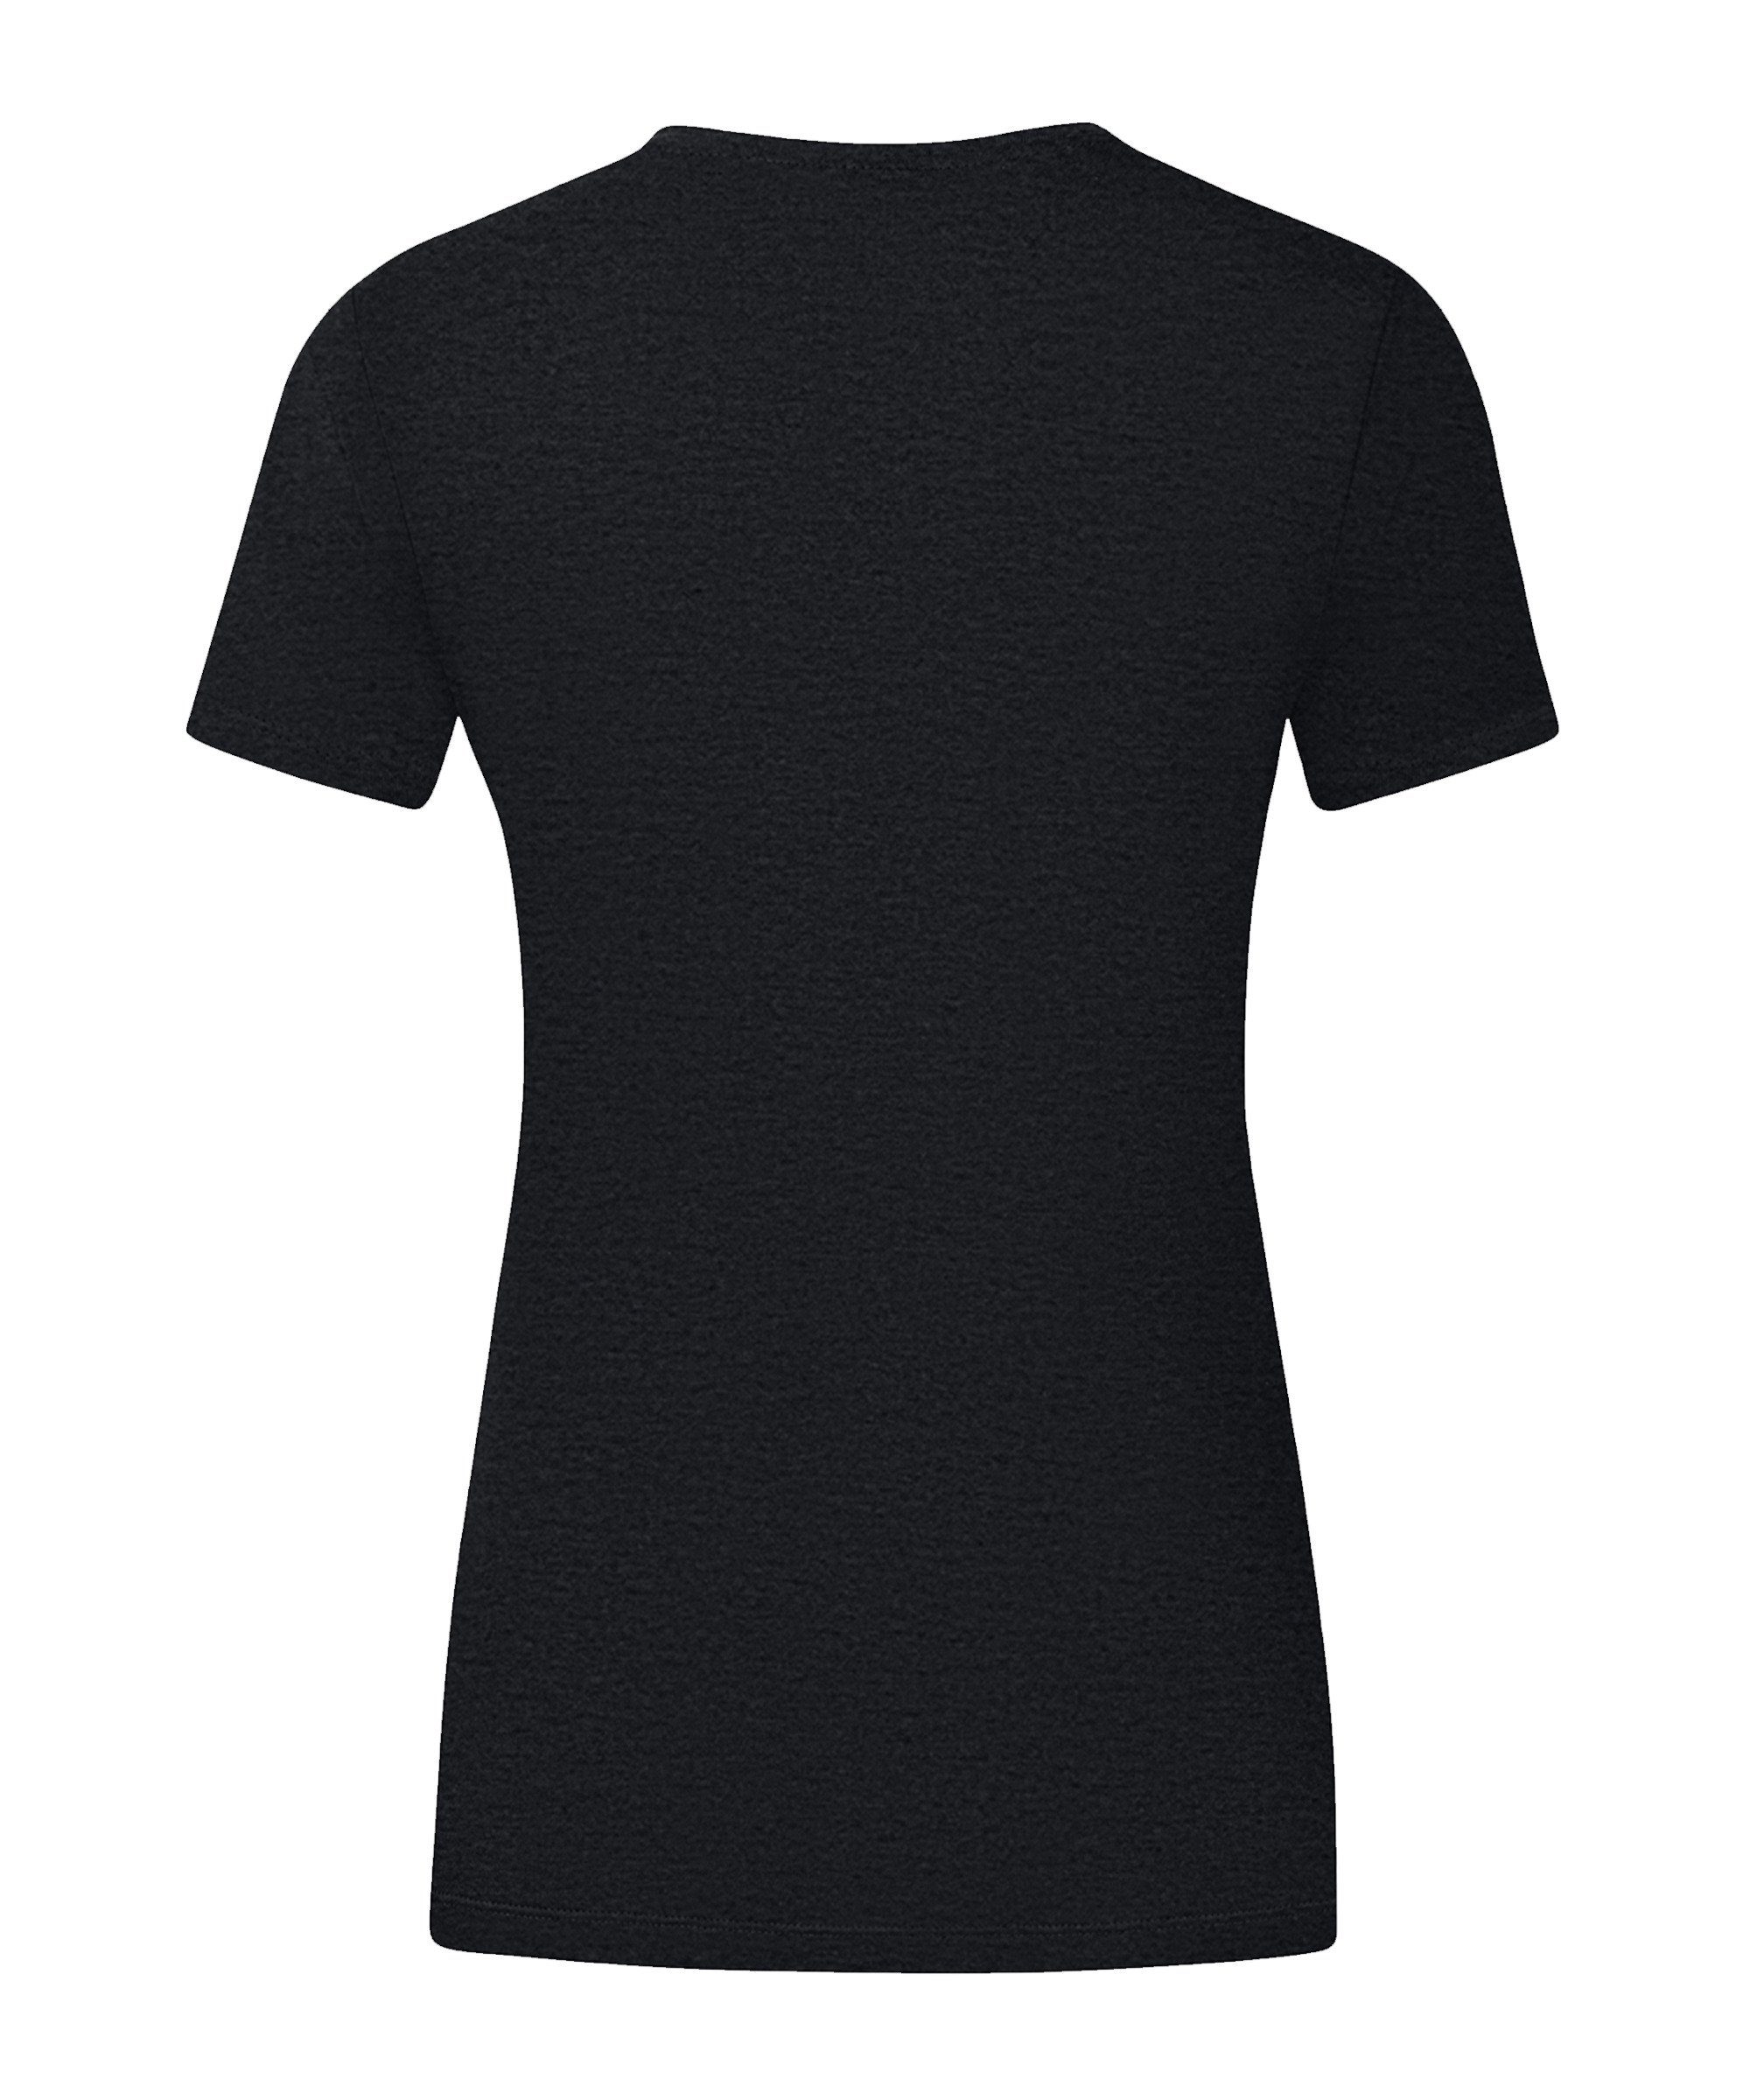 T-Shirt schwarzgelb Promo Damen default T-Shirt Jako